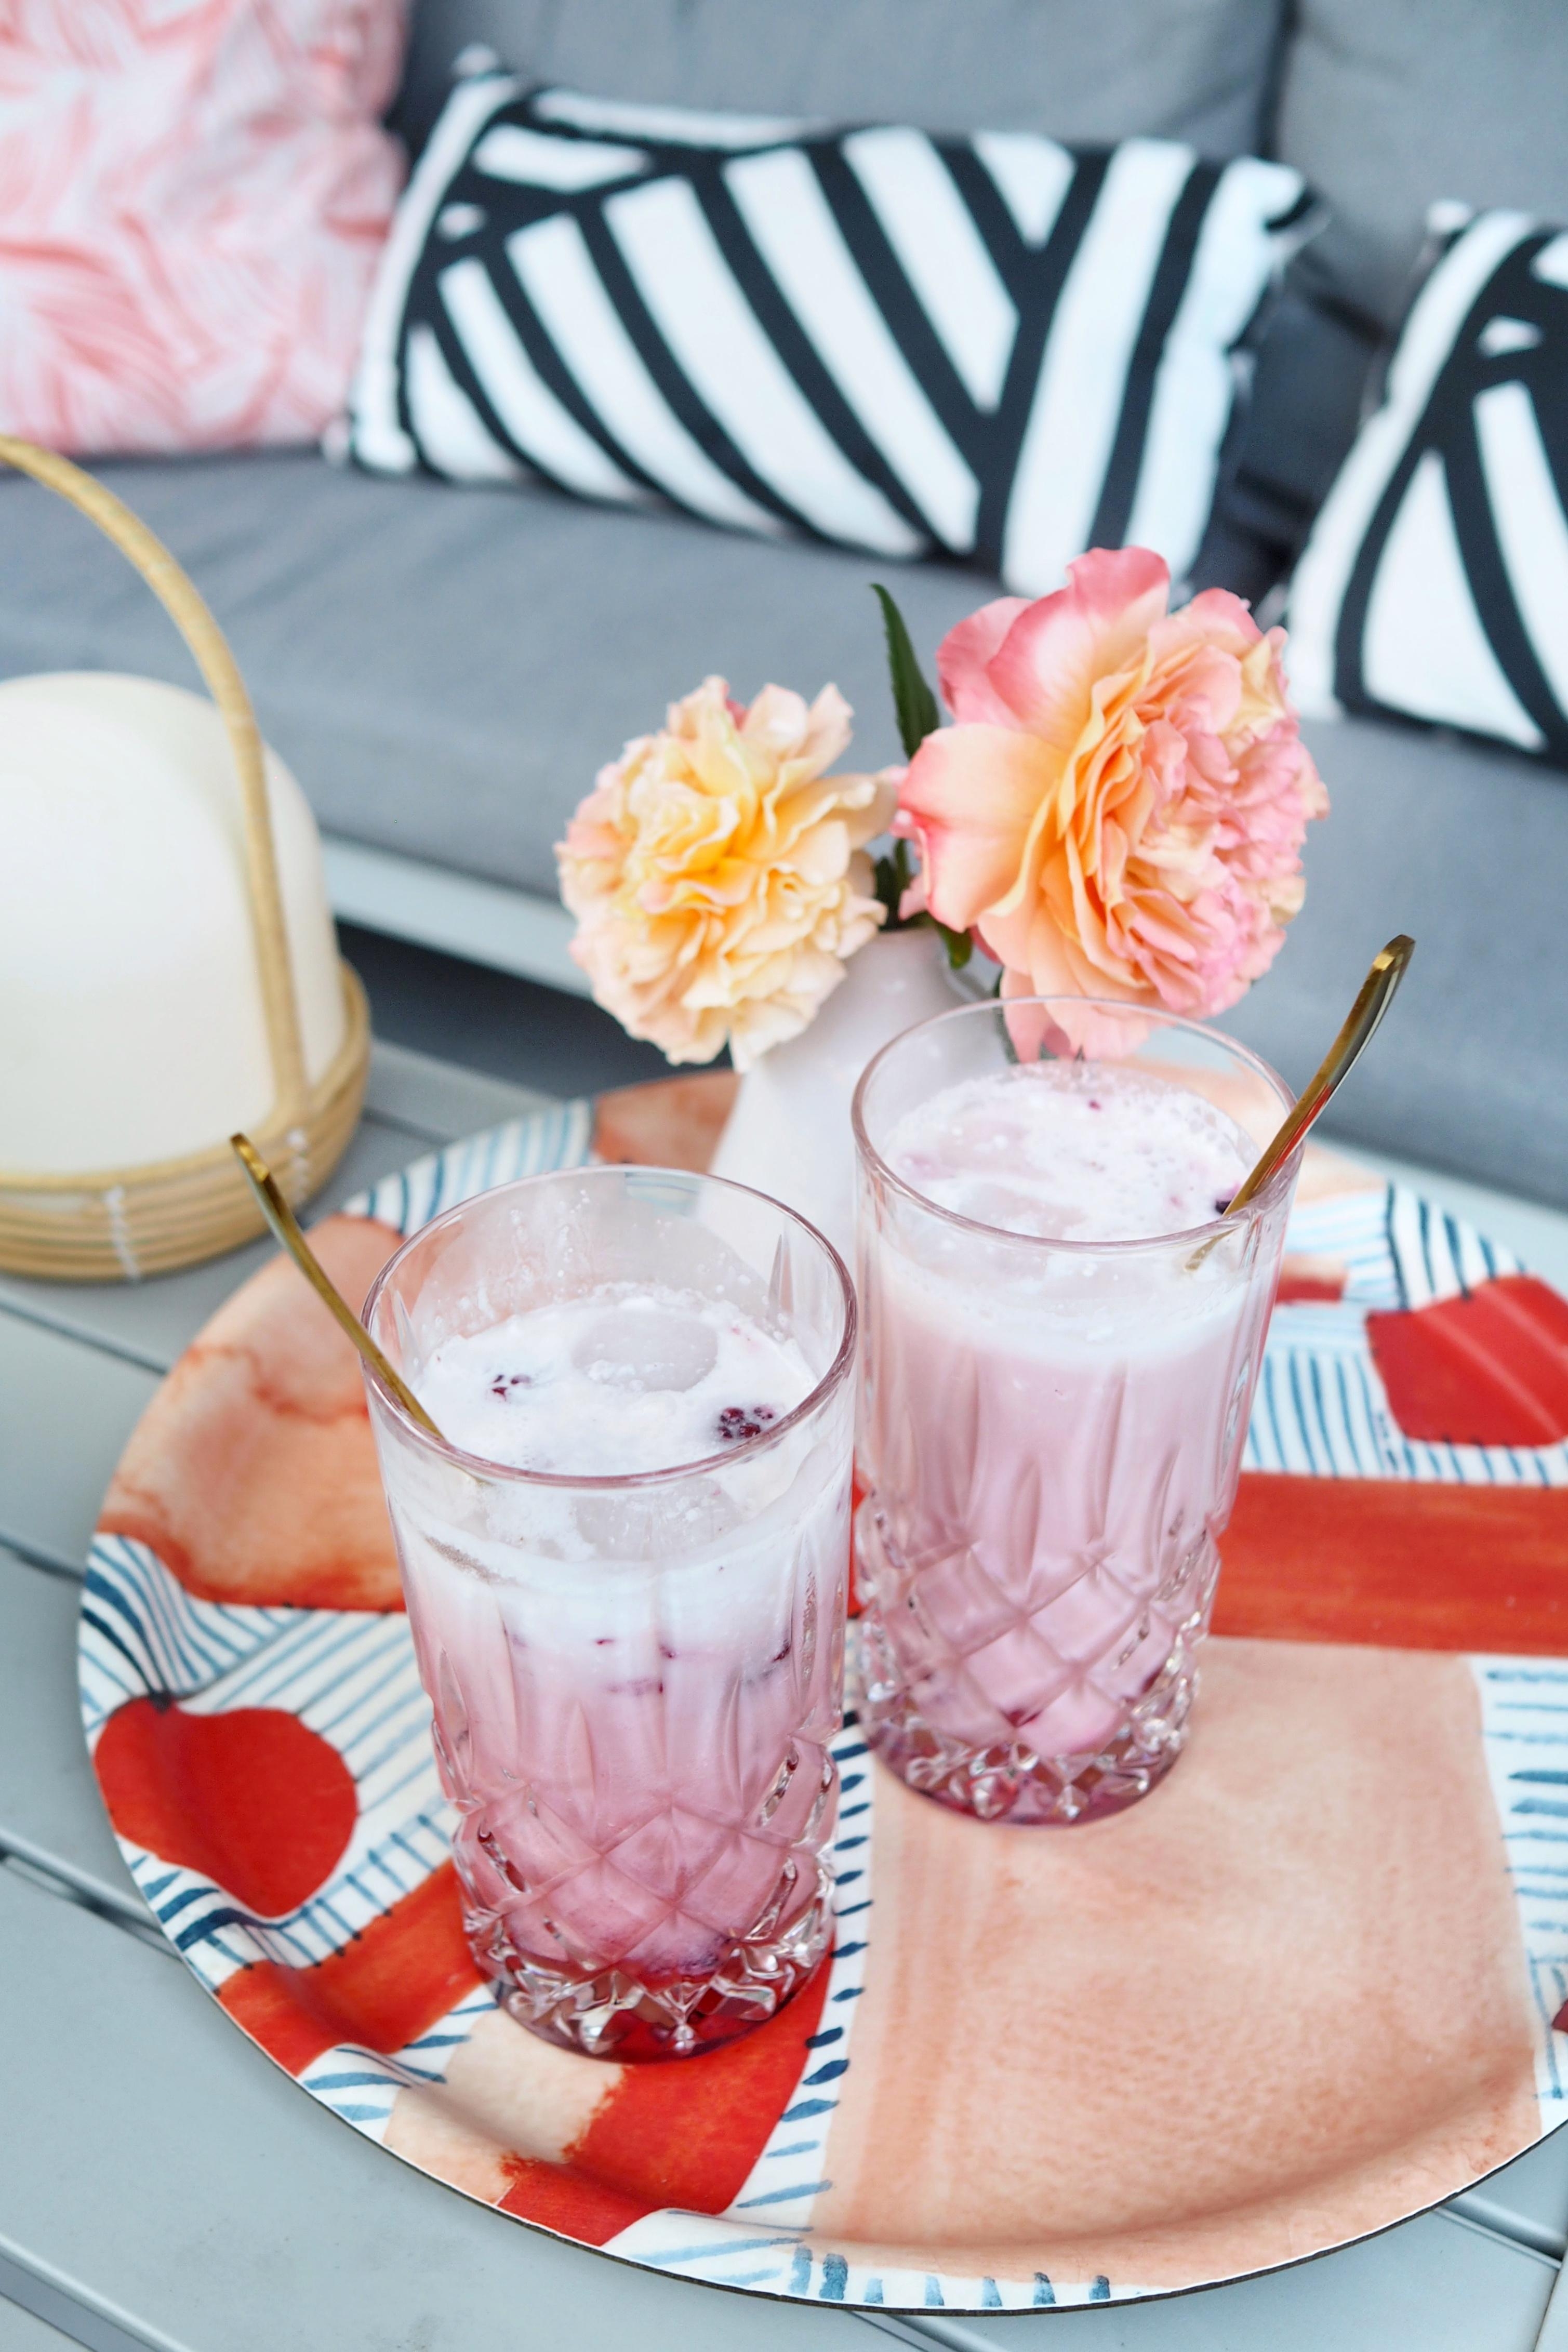 Der hübscheste Drink diesen Sommer!
#pinkdrink #lounge #garten